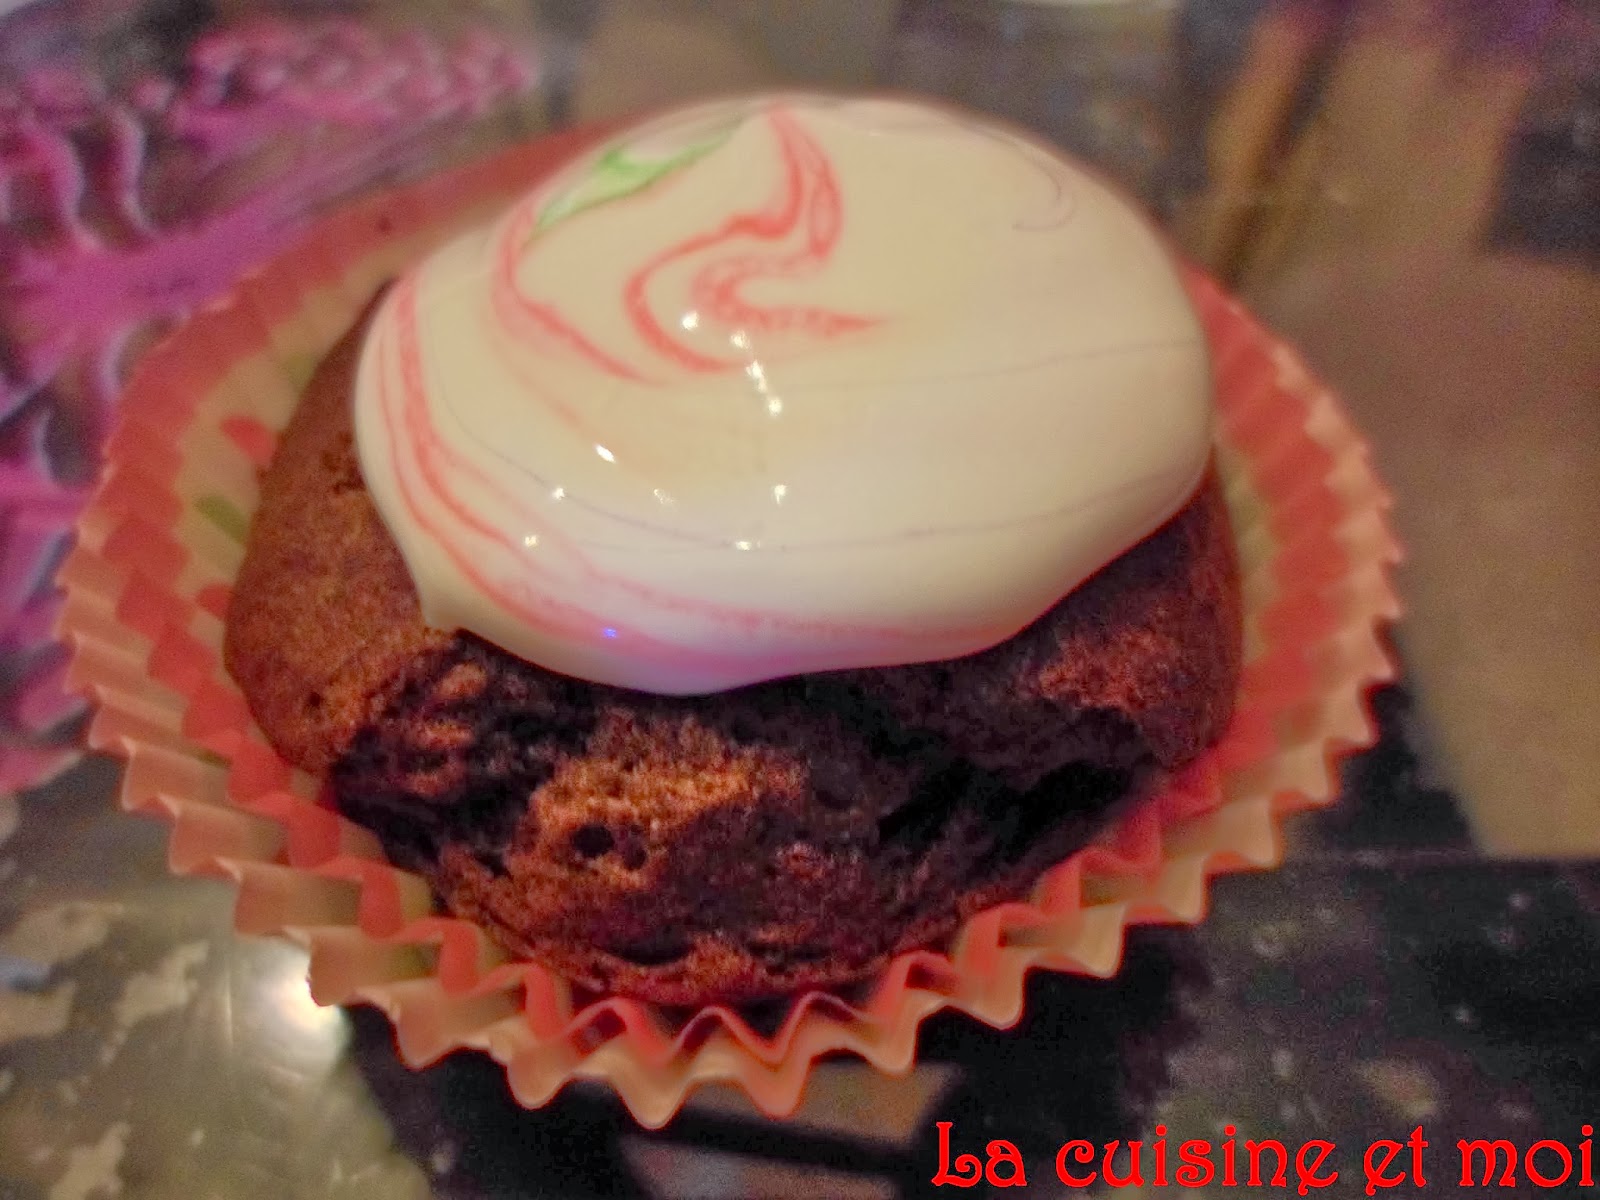 http://la-cuisine-et-moi.blogspot.fr/2014/02/muffins-au-nutella.html